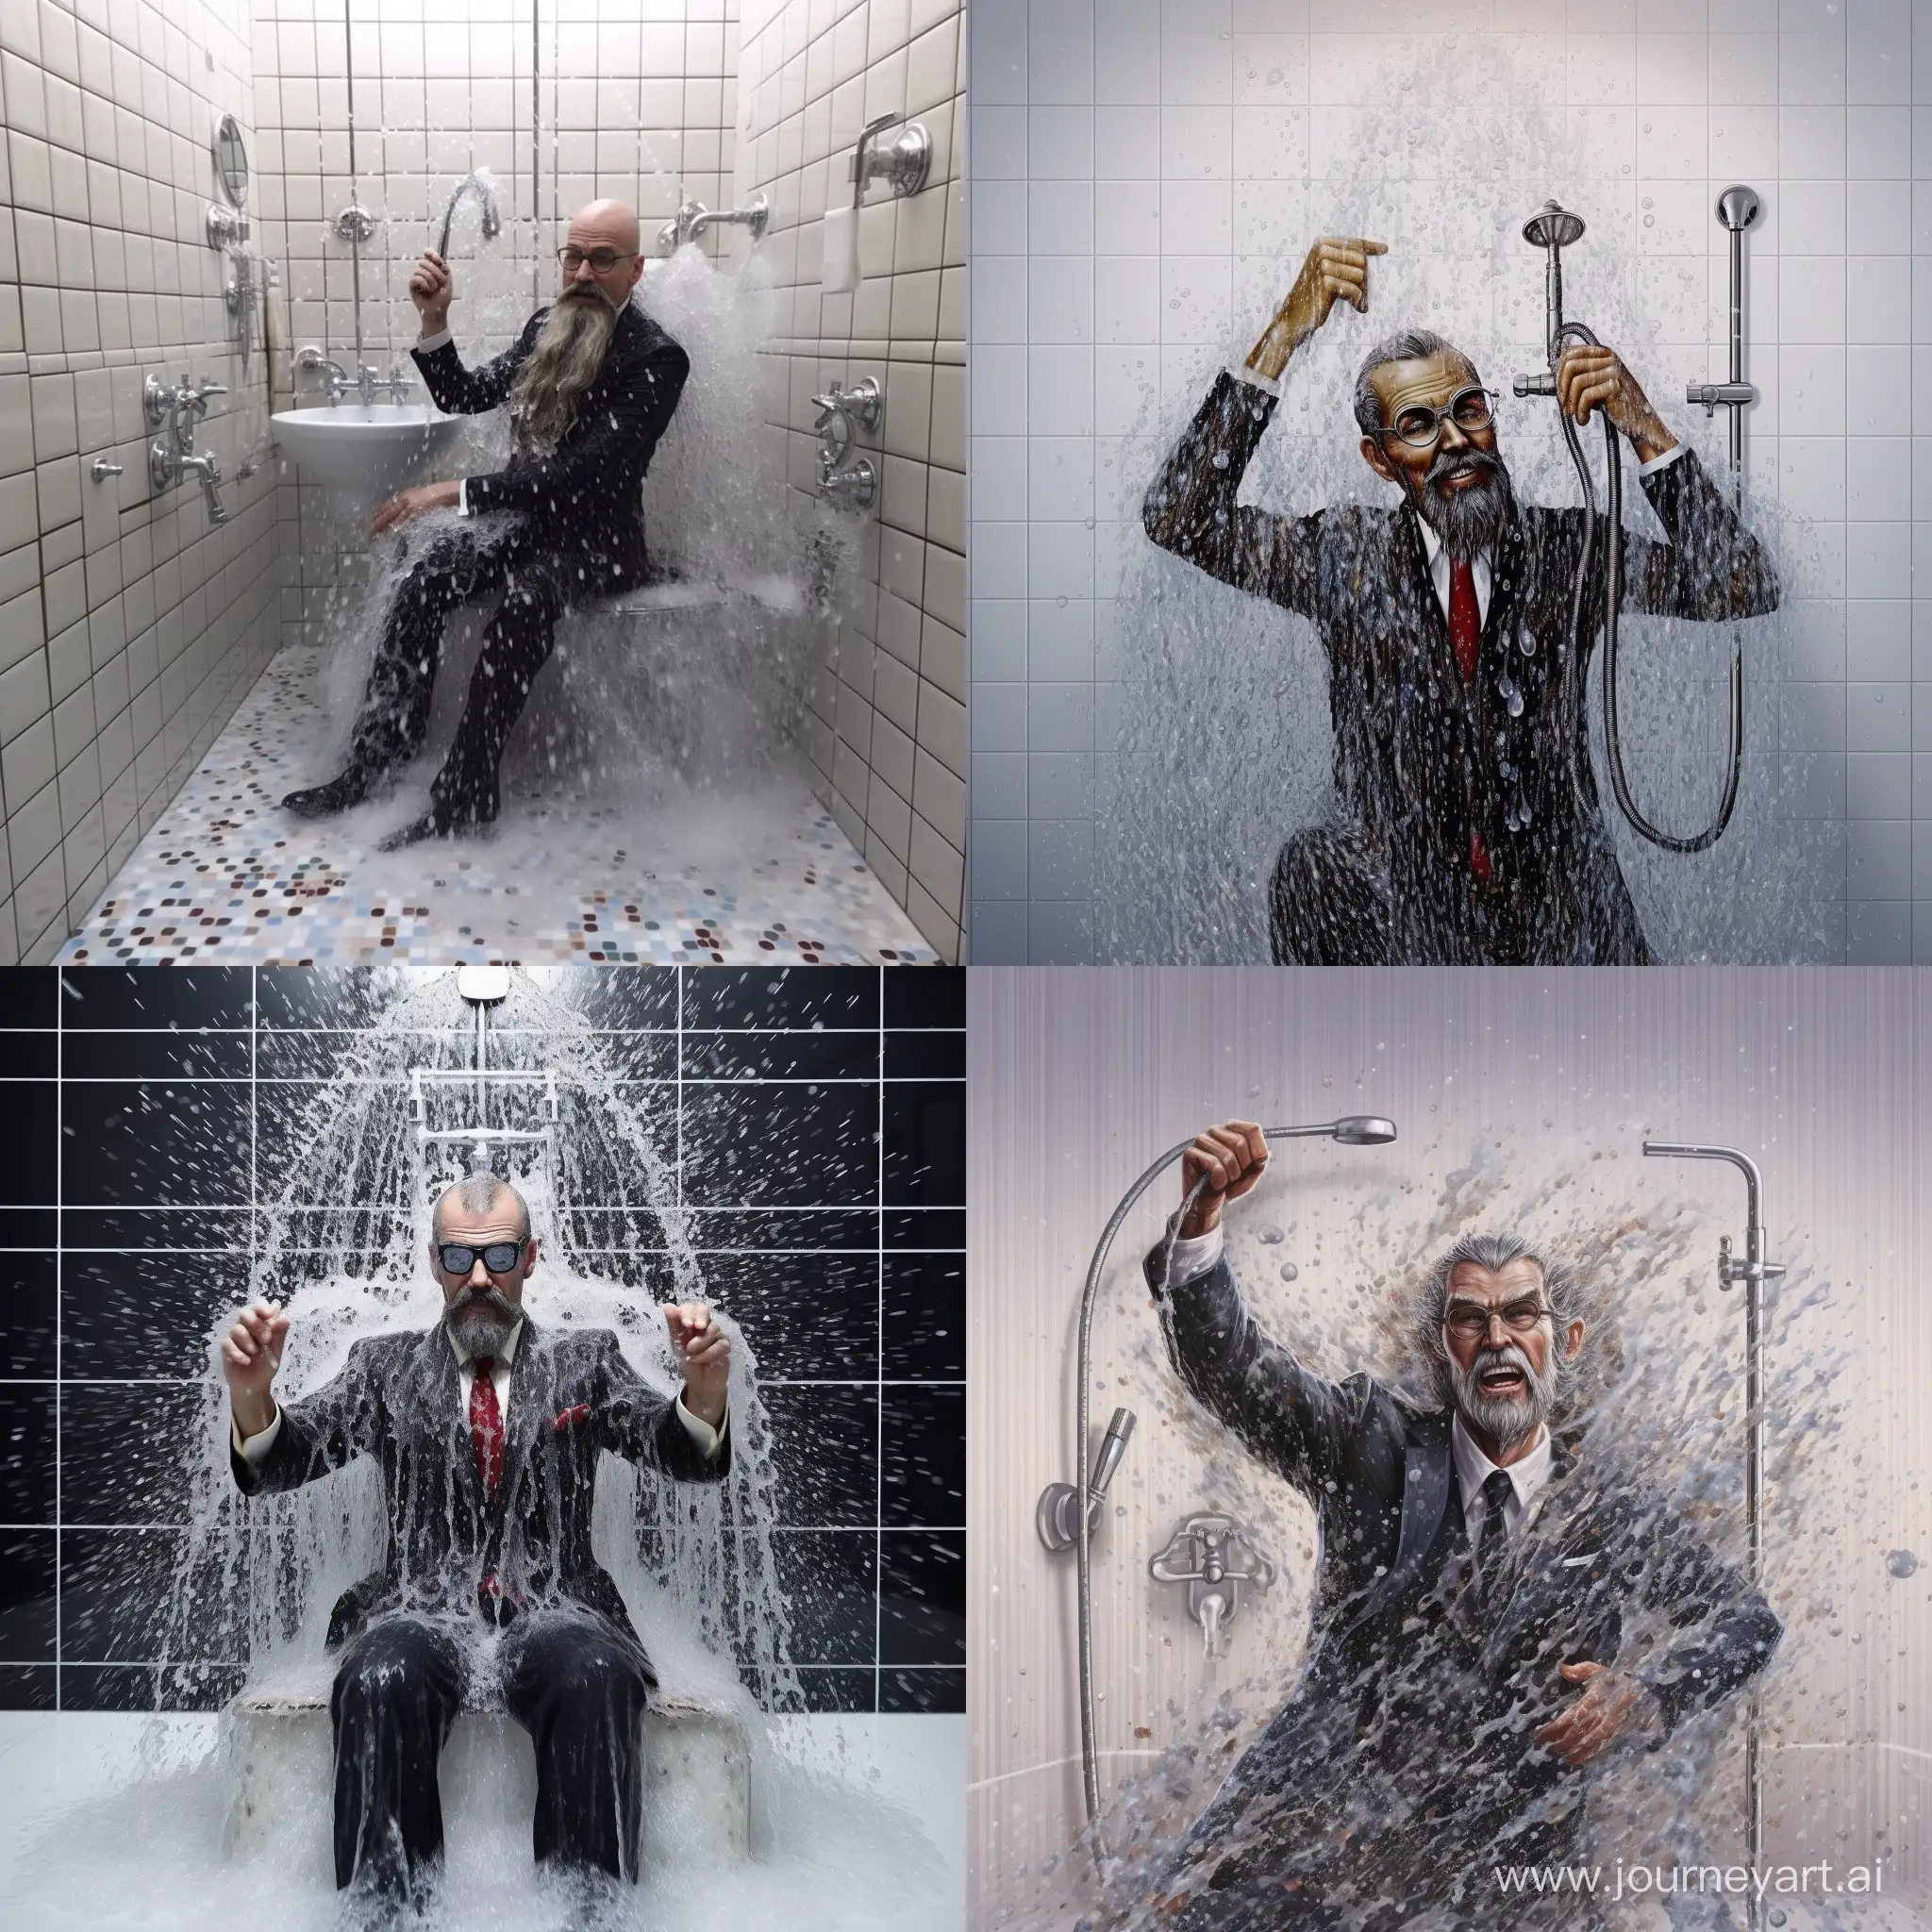 Doctor Strange having a shower